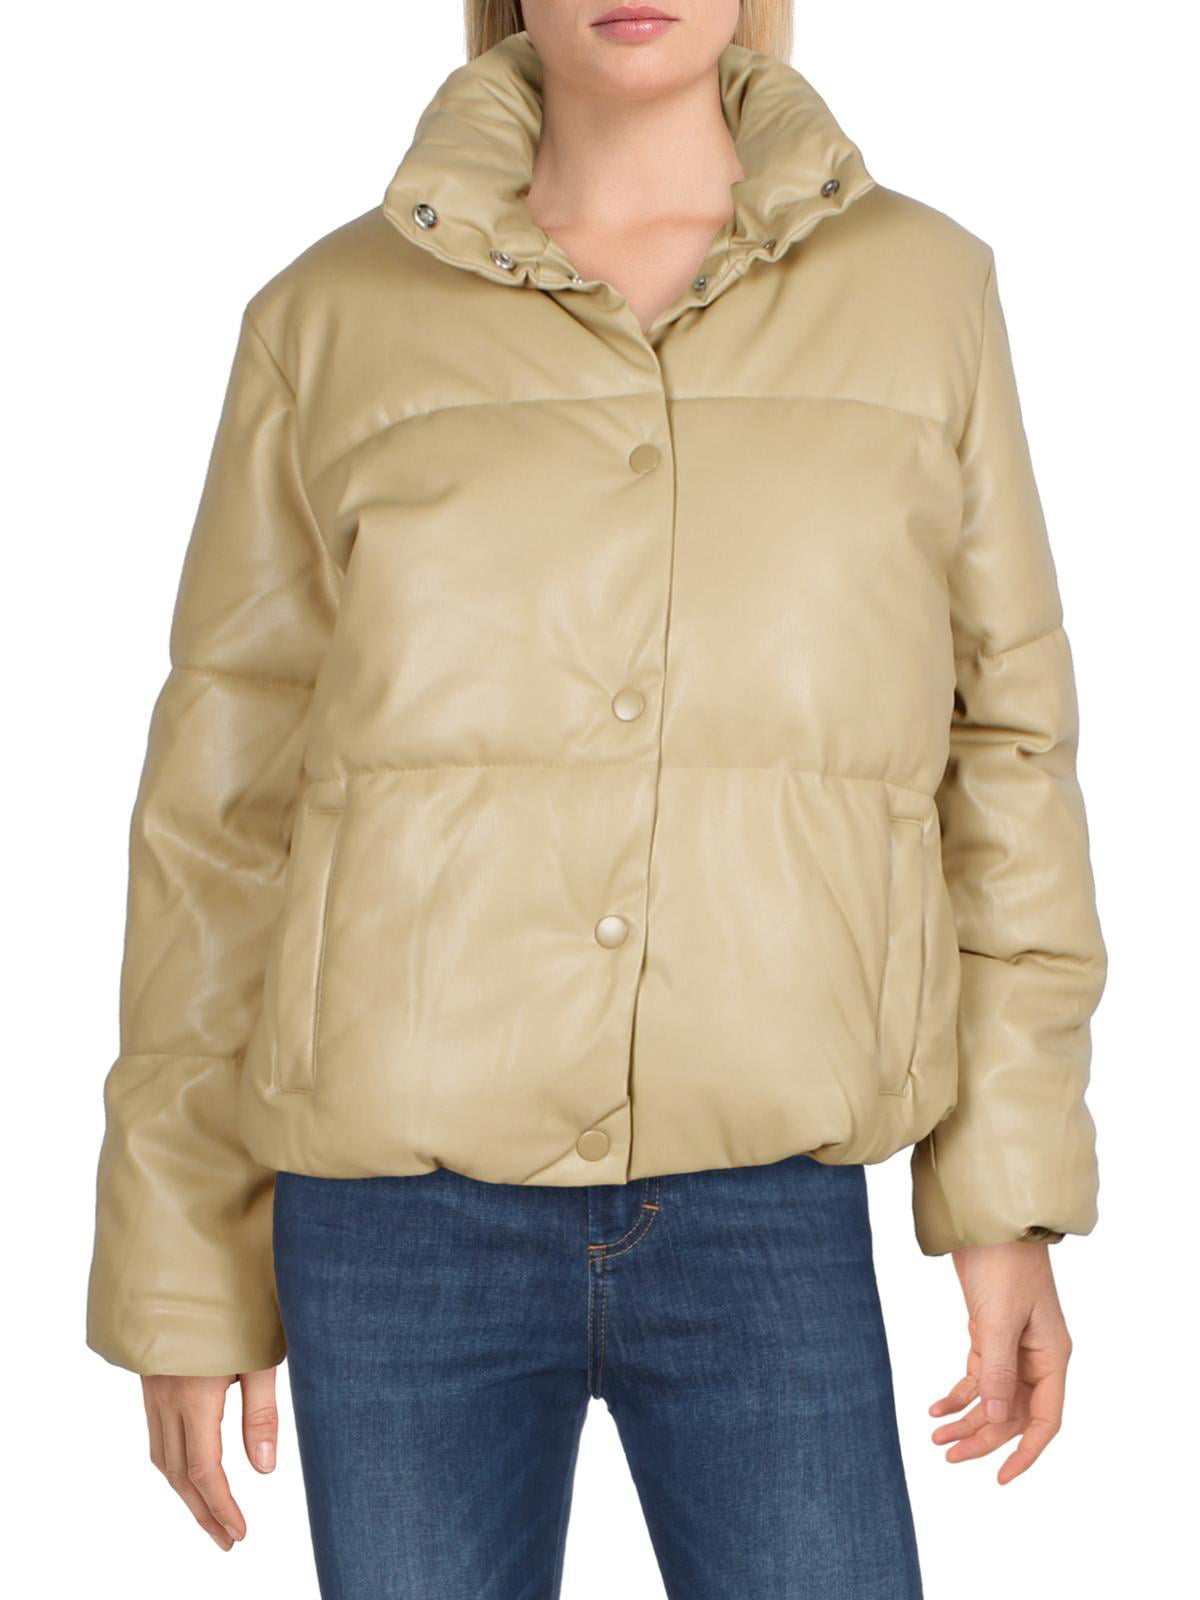 reflecteren Vergemakkelijken Omleiding Vero Moda Women's Short Quilted Puffer Coat with Stand Collar - Walmart.com